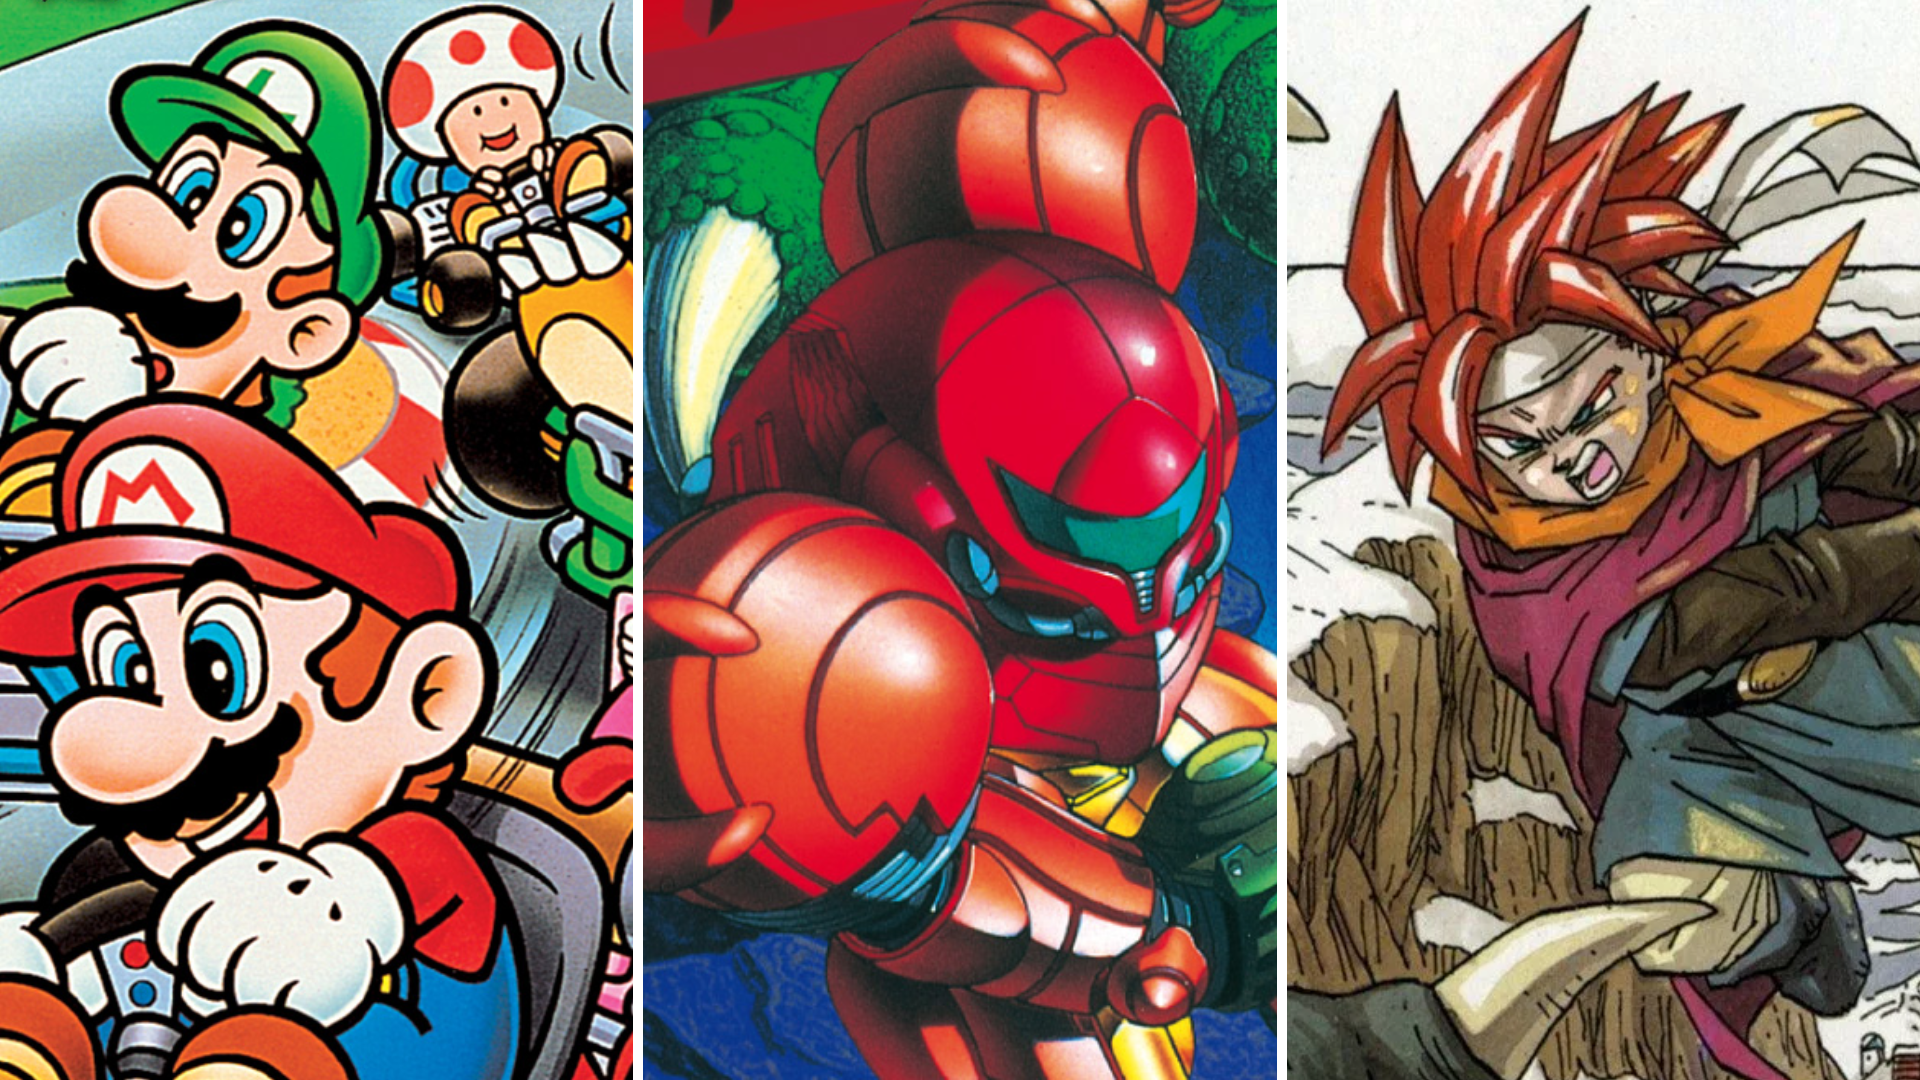 Diário de uma Gamer: Top 5 - Melhores jogos de pancadaria do Super Nintendo